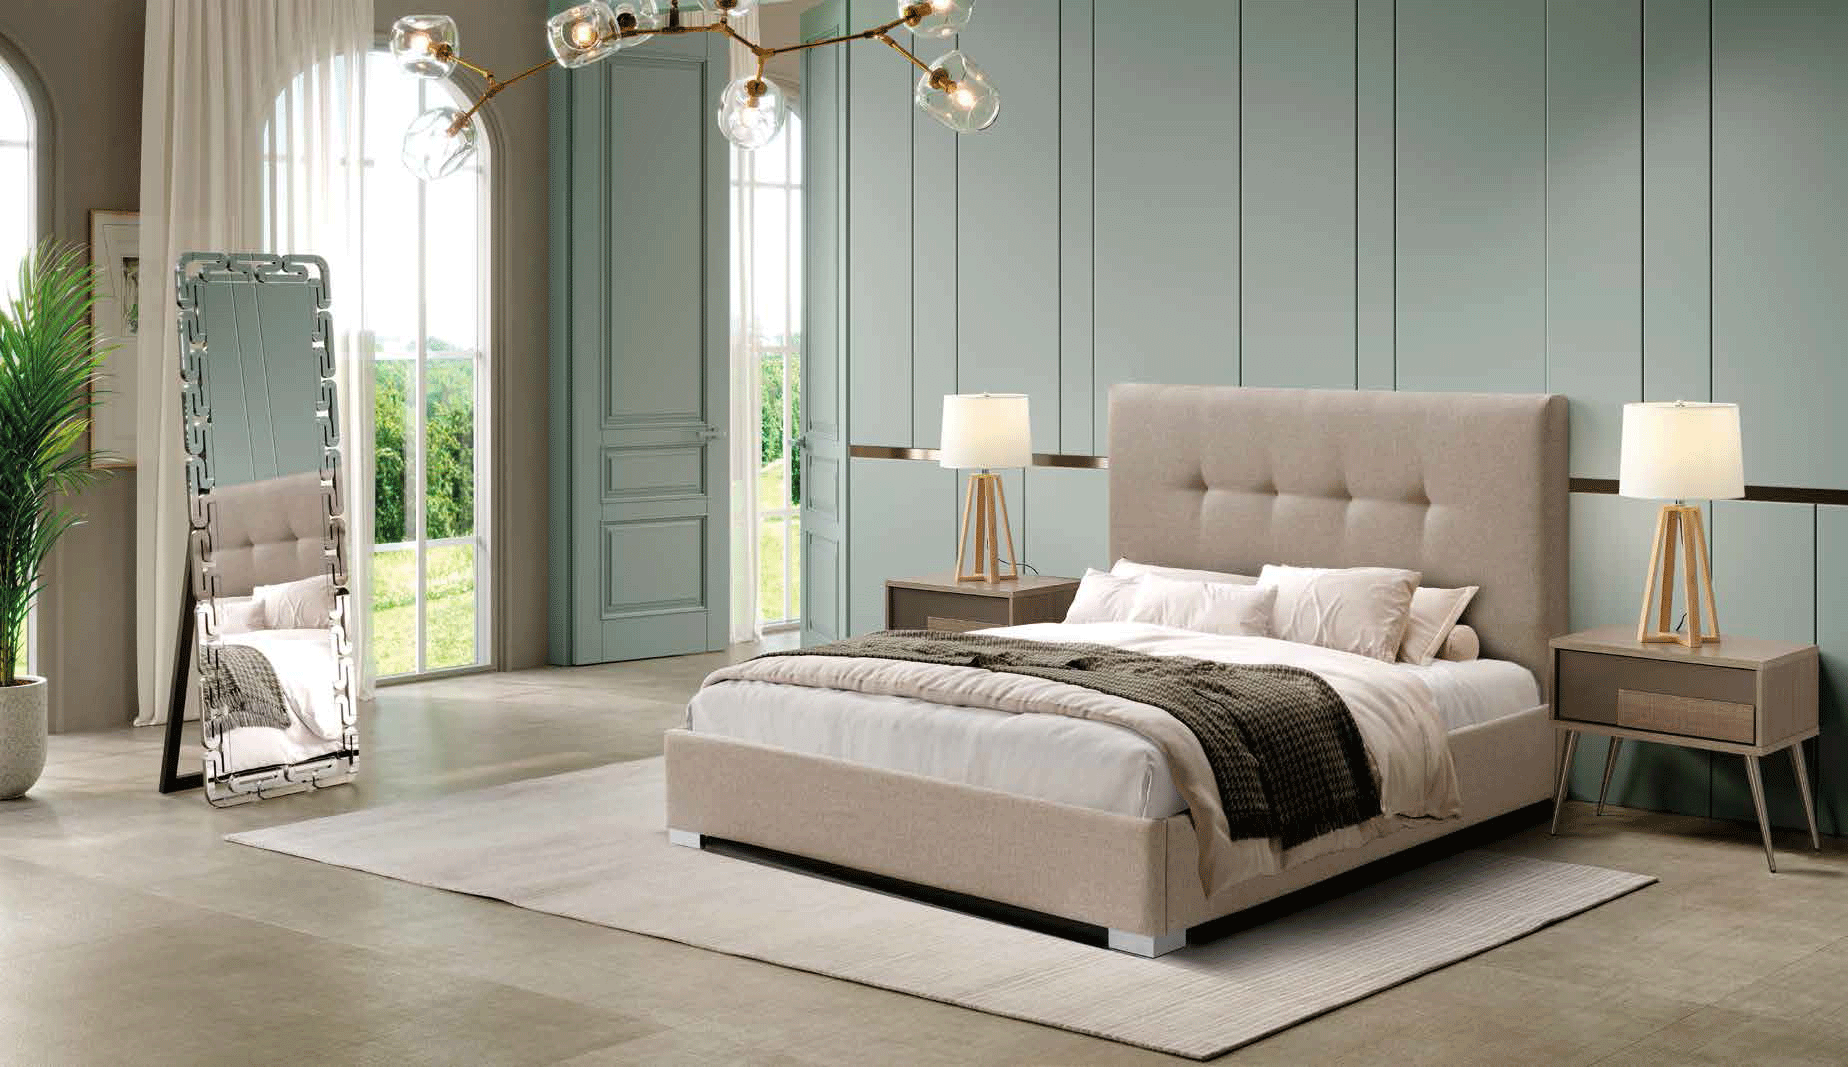 Bedroom Furniture Beds 404 Rita, M-162, E-417, LT-8067-G1